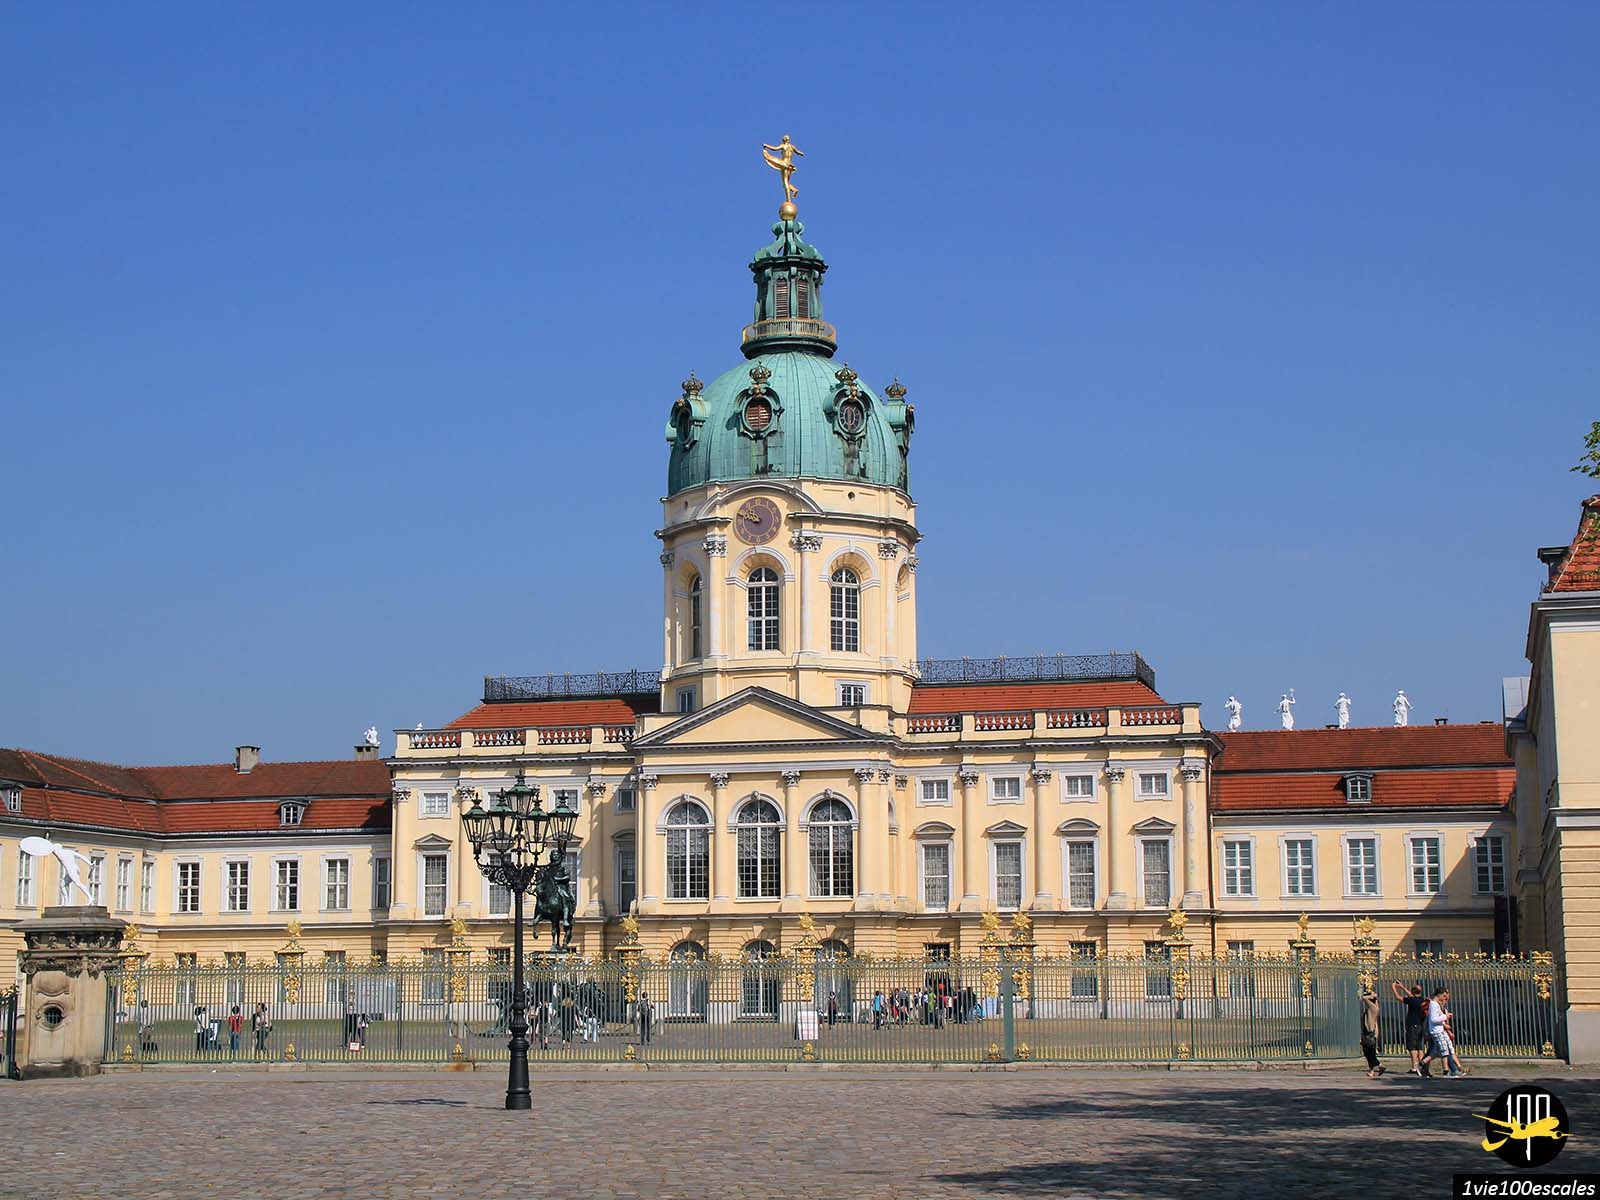 Le château de Charlottenburg est aujourd'hui le plus grand & le plus somptueux château de Berlin et l'une des attractions touristiques les plus connues